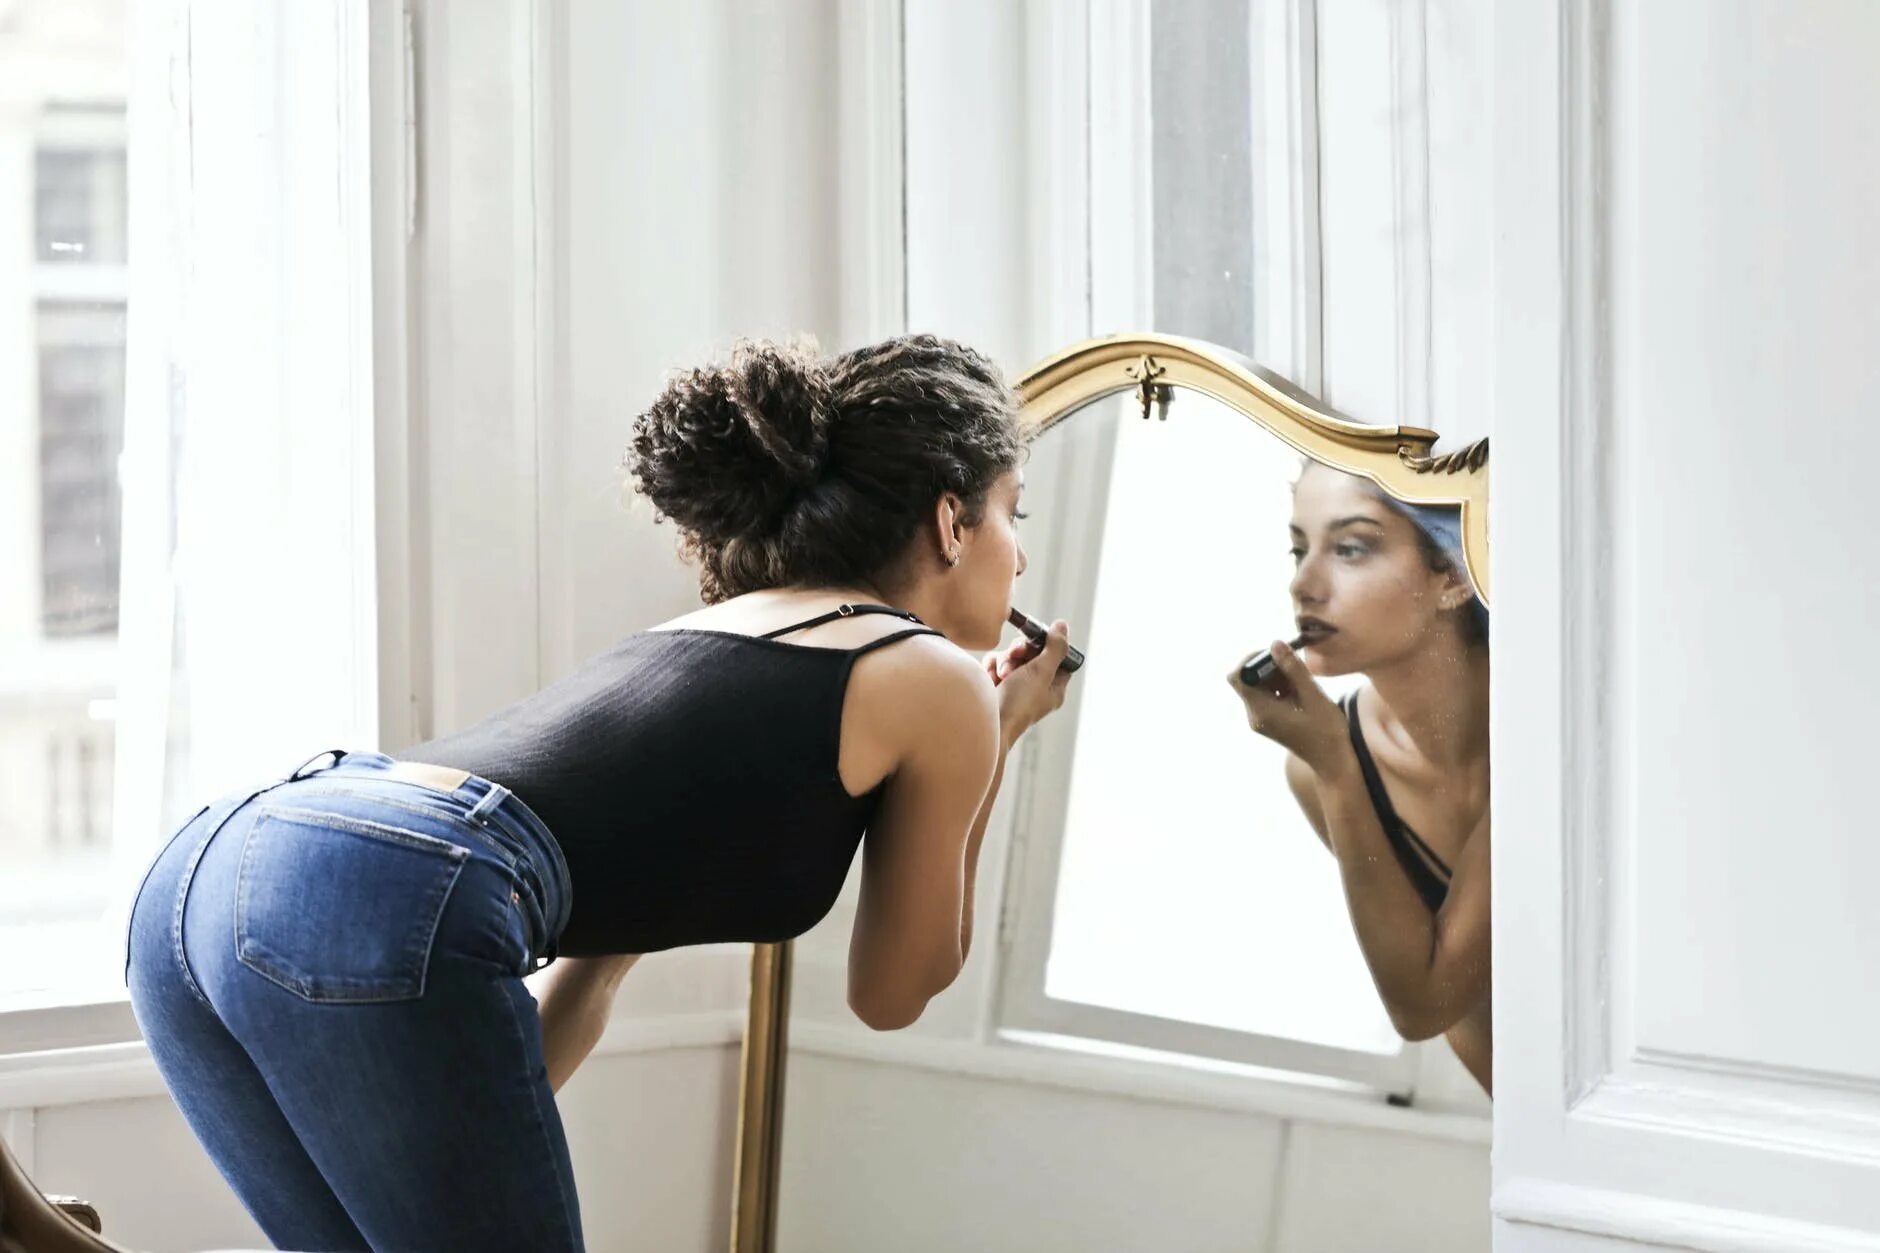 Это больше отражается на. Девушка в зеркале. Красивая женщина у зеркала. Девушкапеиед зеркалом. Отражение женщины в зеркале.